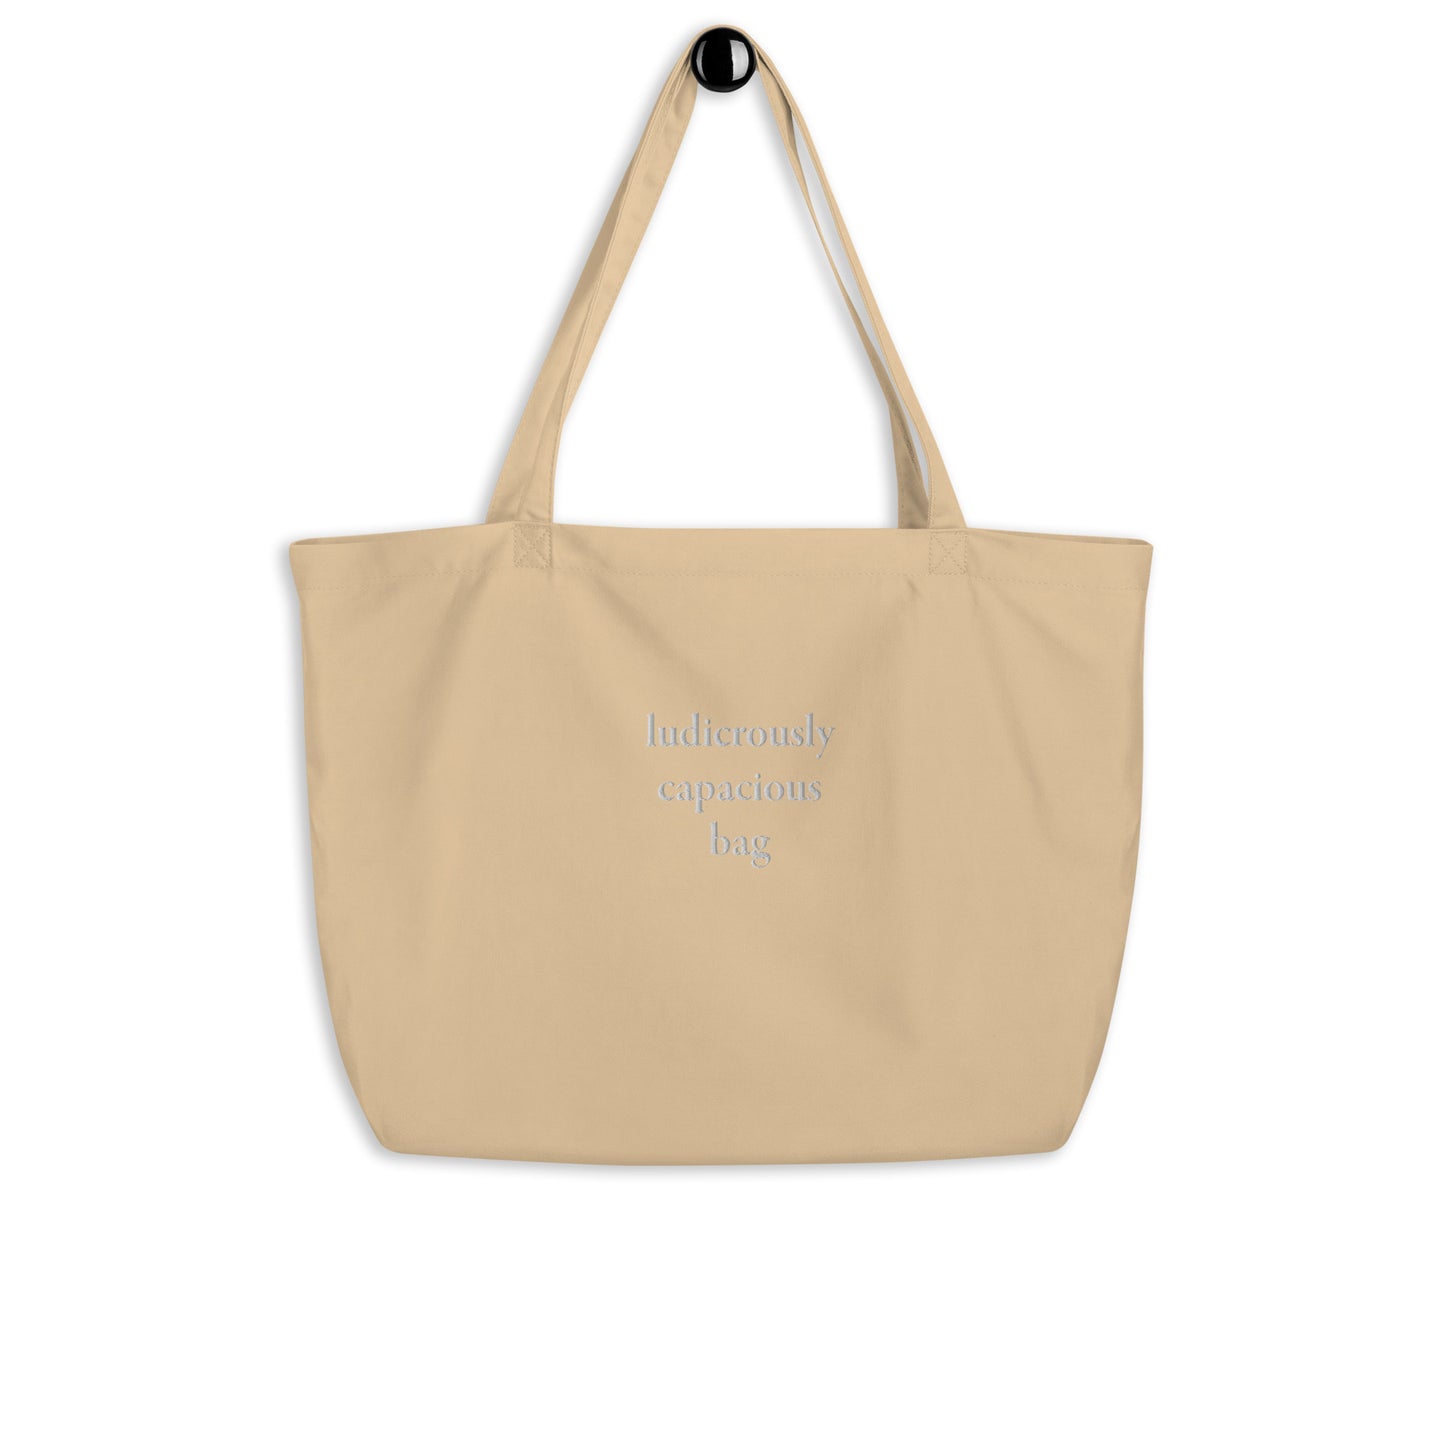 ludicrously capacious bag (Large organic tote bag)